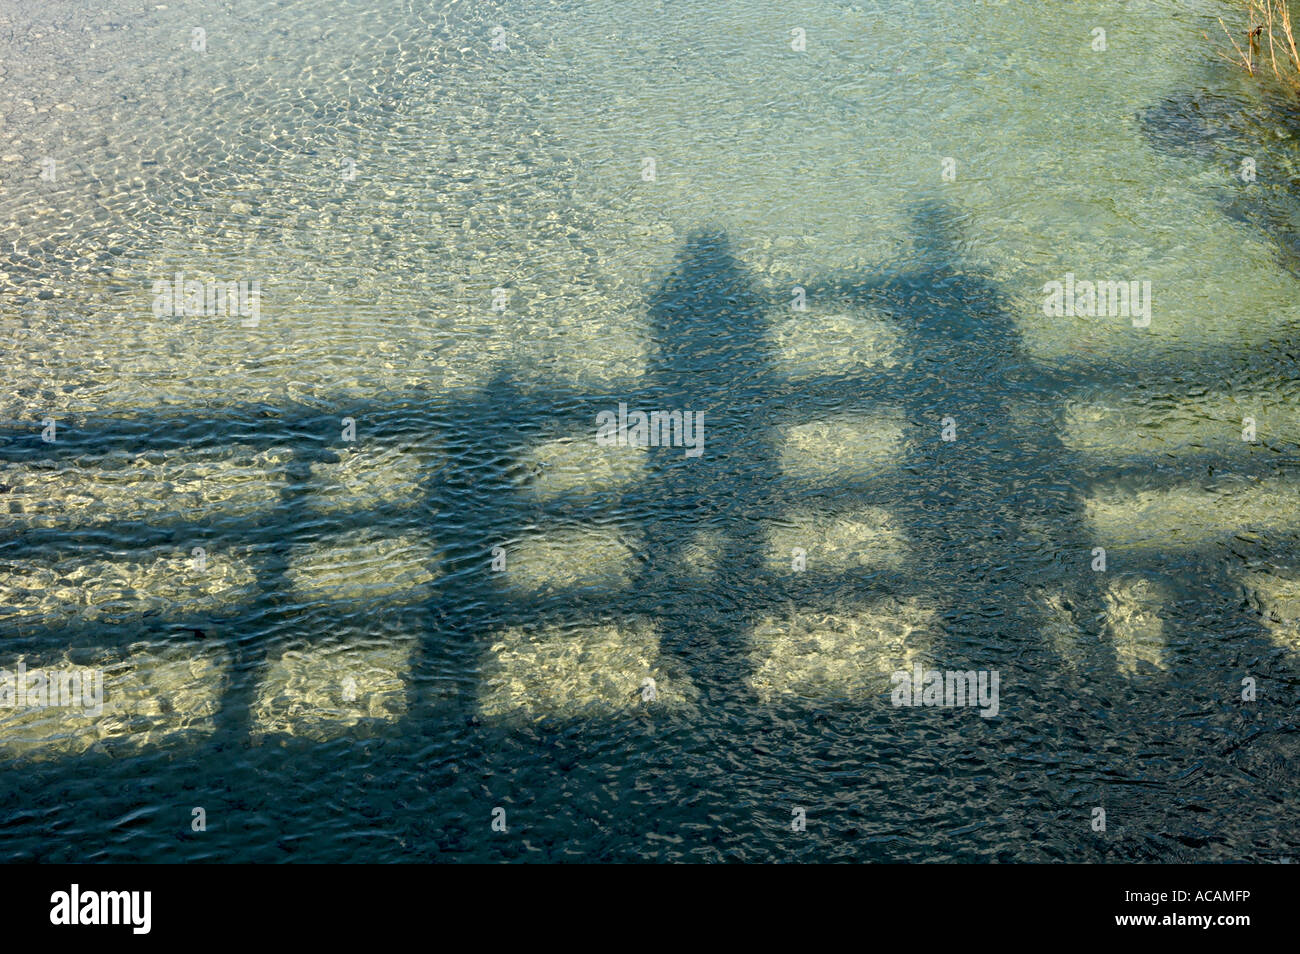 Spiegelbild und Schatten von zwei Personen auf einer Brücke im Wasser Stockfoto